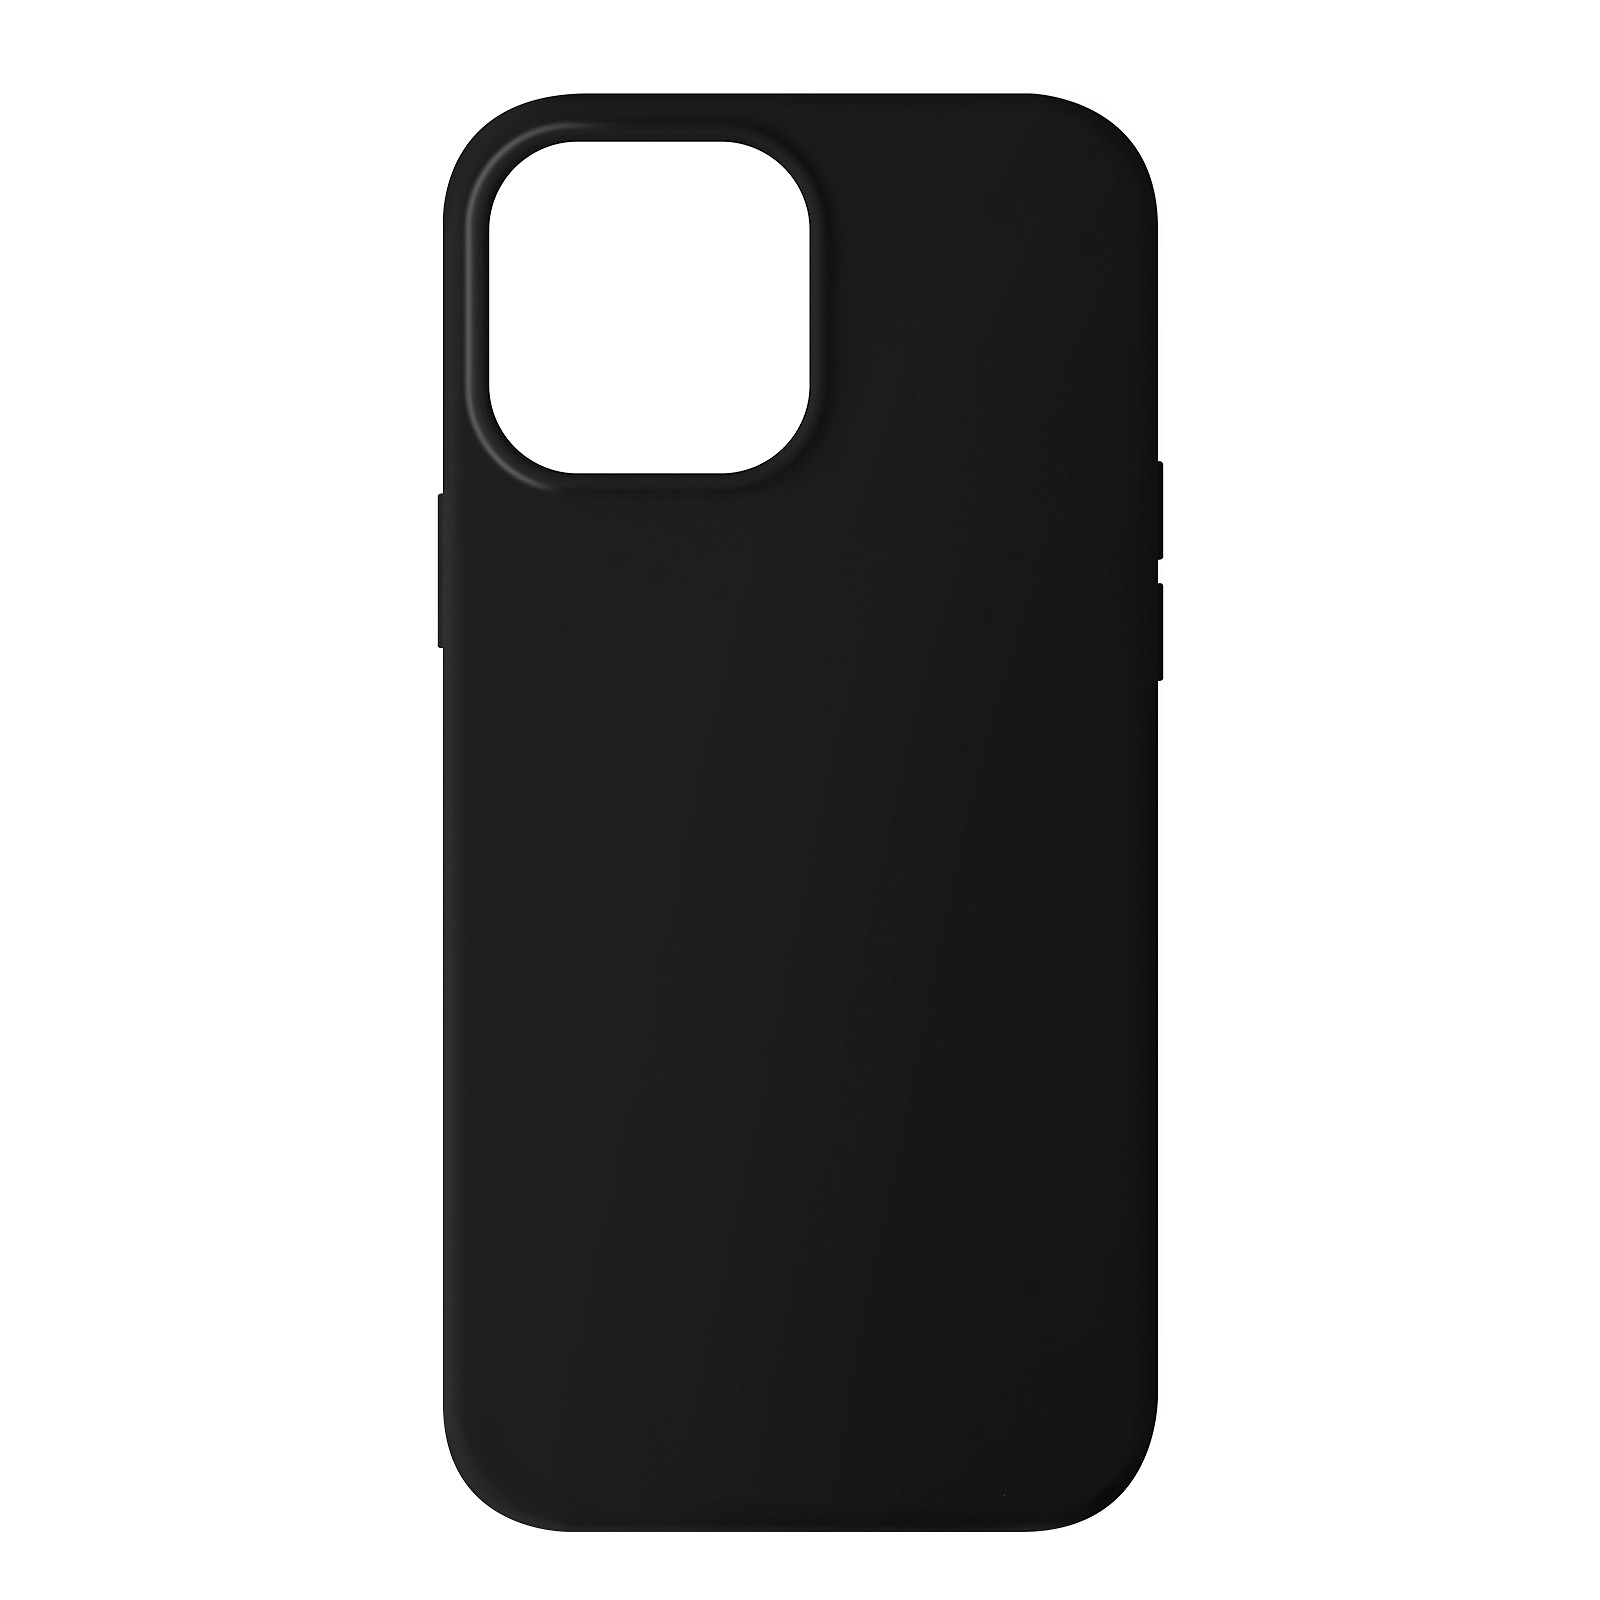 Avizar Coque pour iPhone 13 Pro Max Silicone Semi-rigide Finition Soft-touch Noir - Coque telephone Avizar